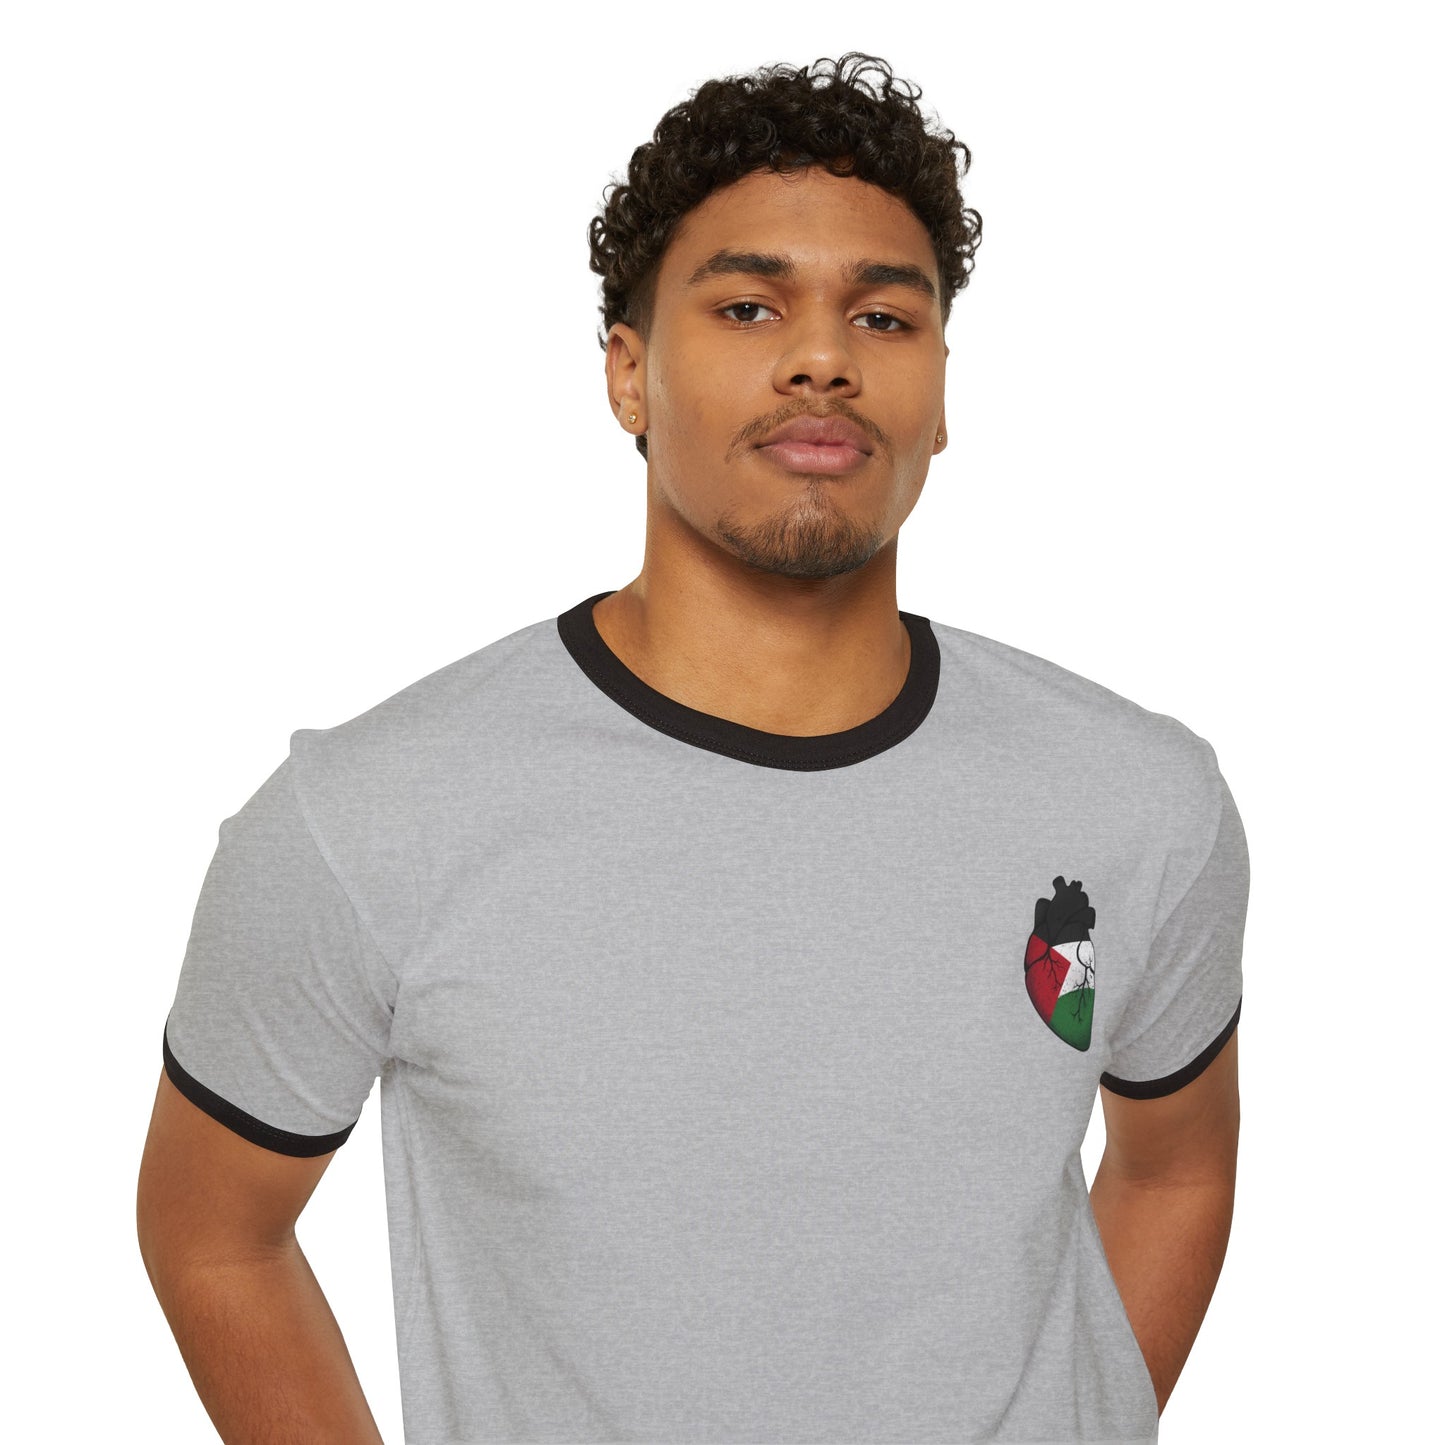 Copy of Unisex Cotton Ringer T-Shirt